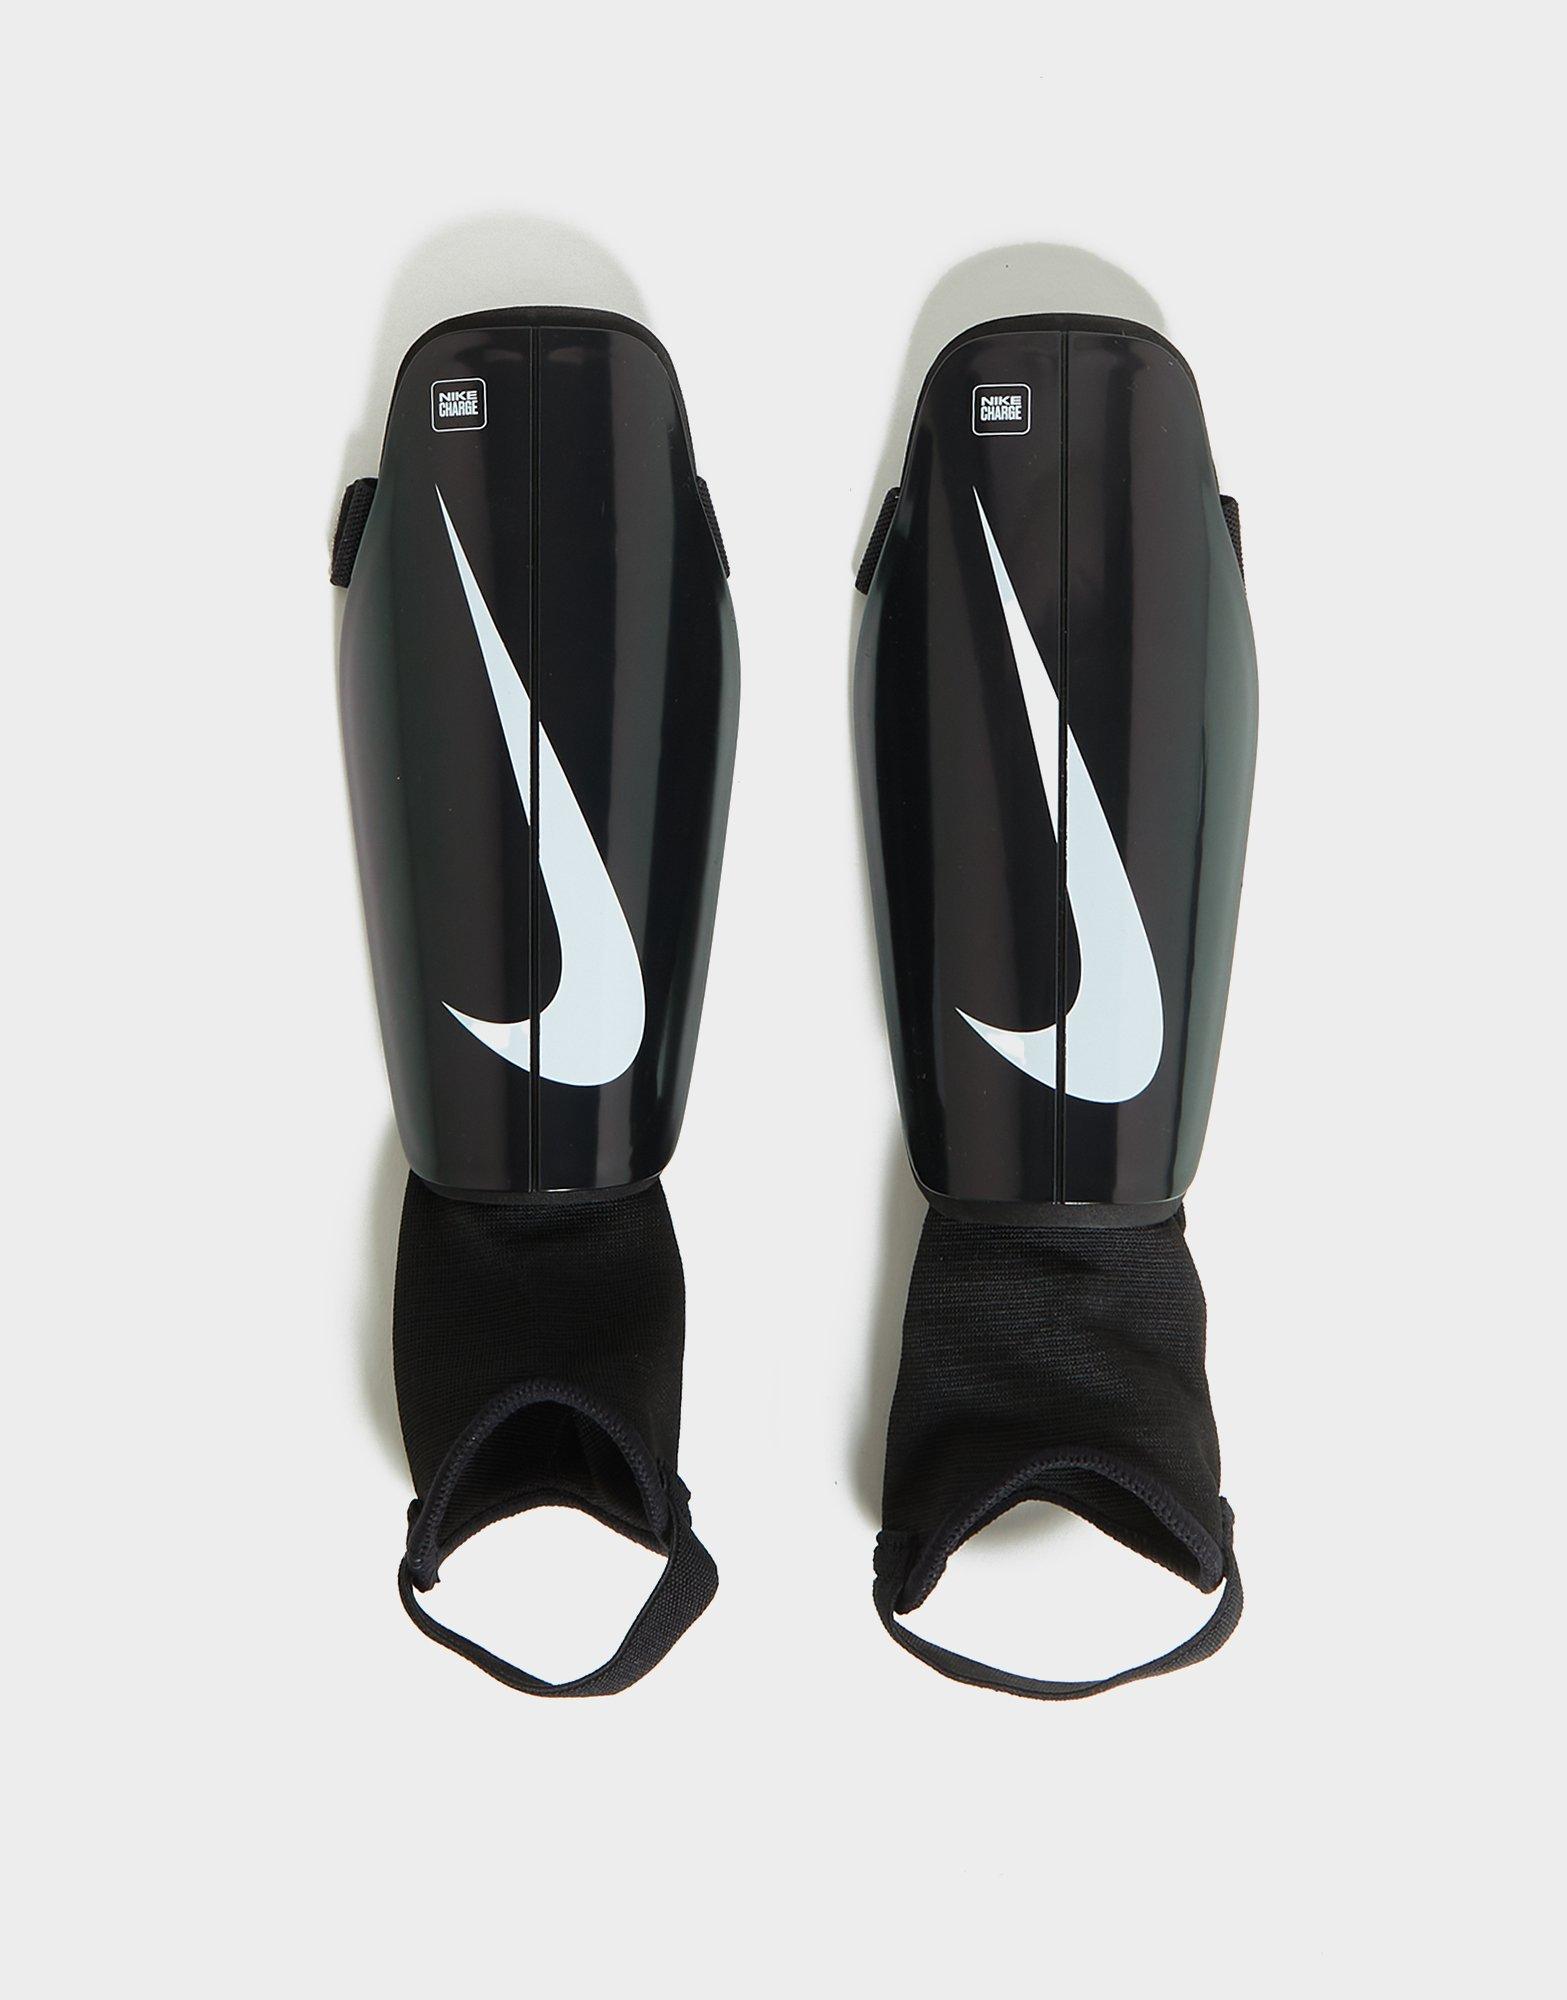 Protège-tibias de football Nike Charge. Nike FR